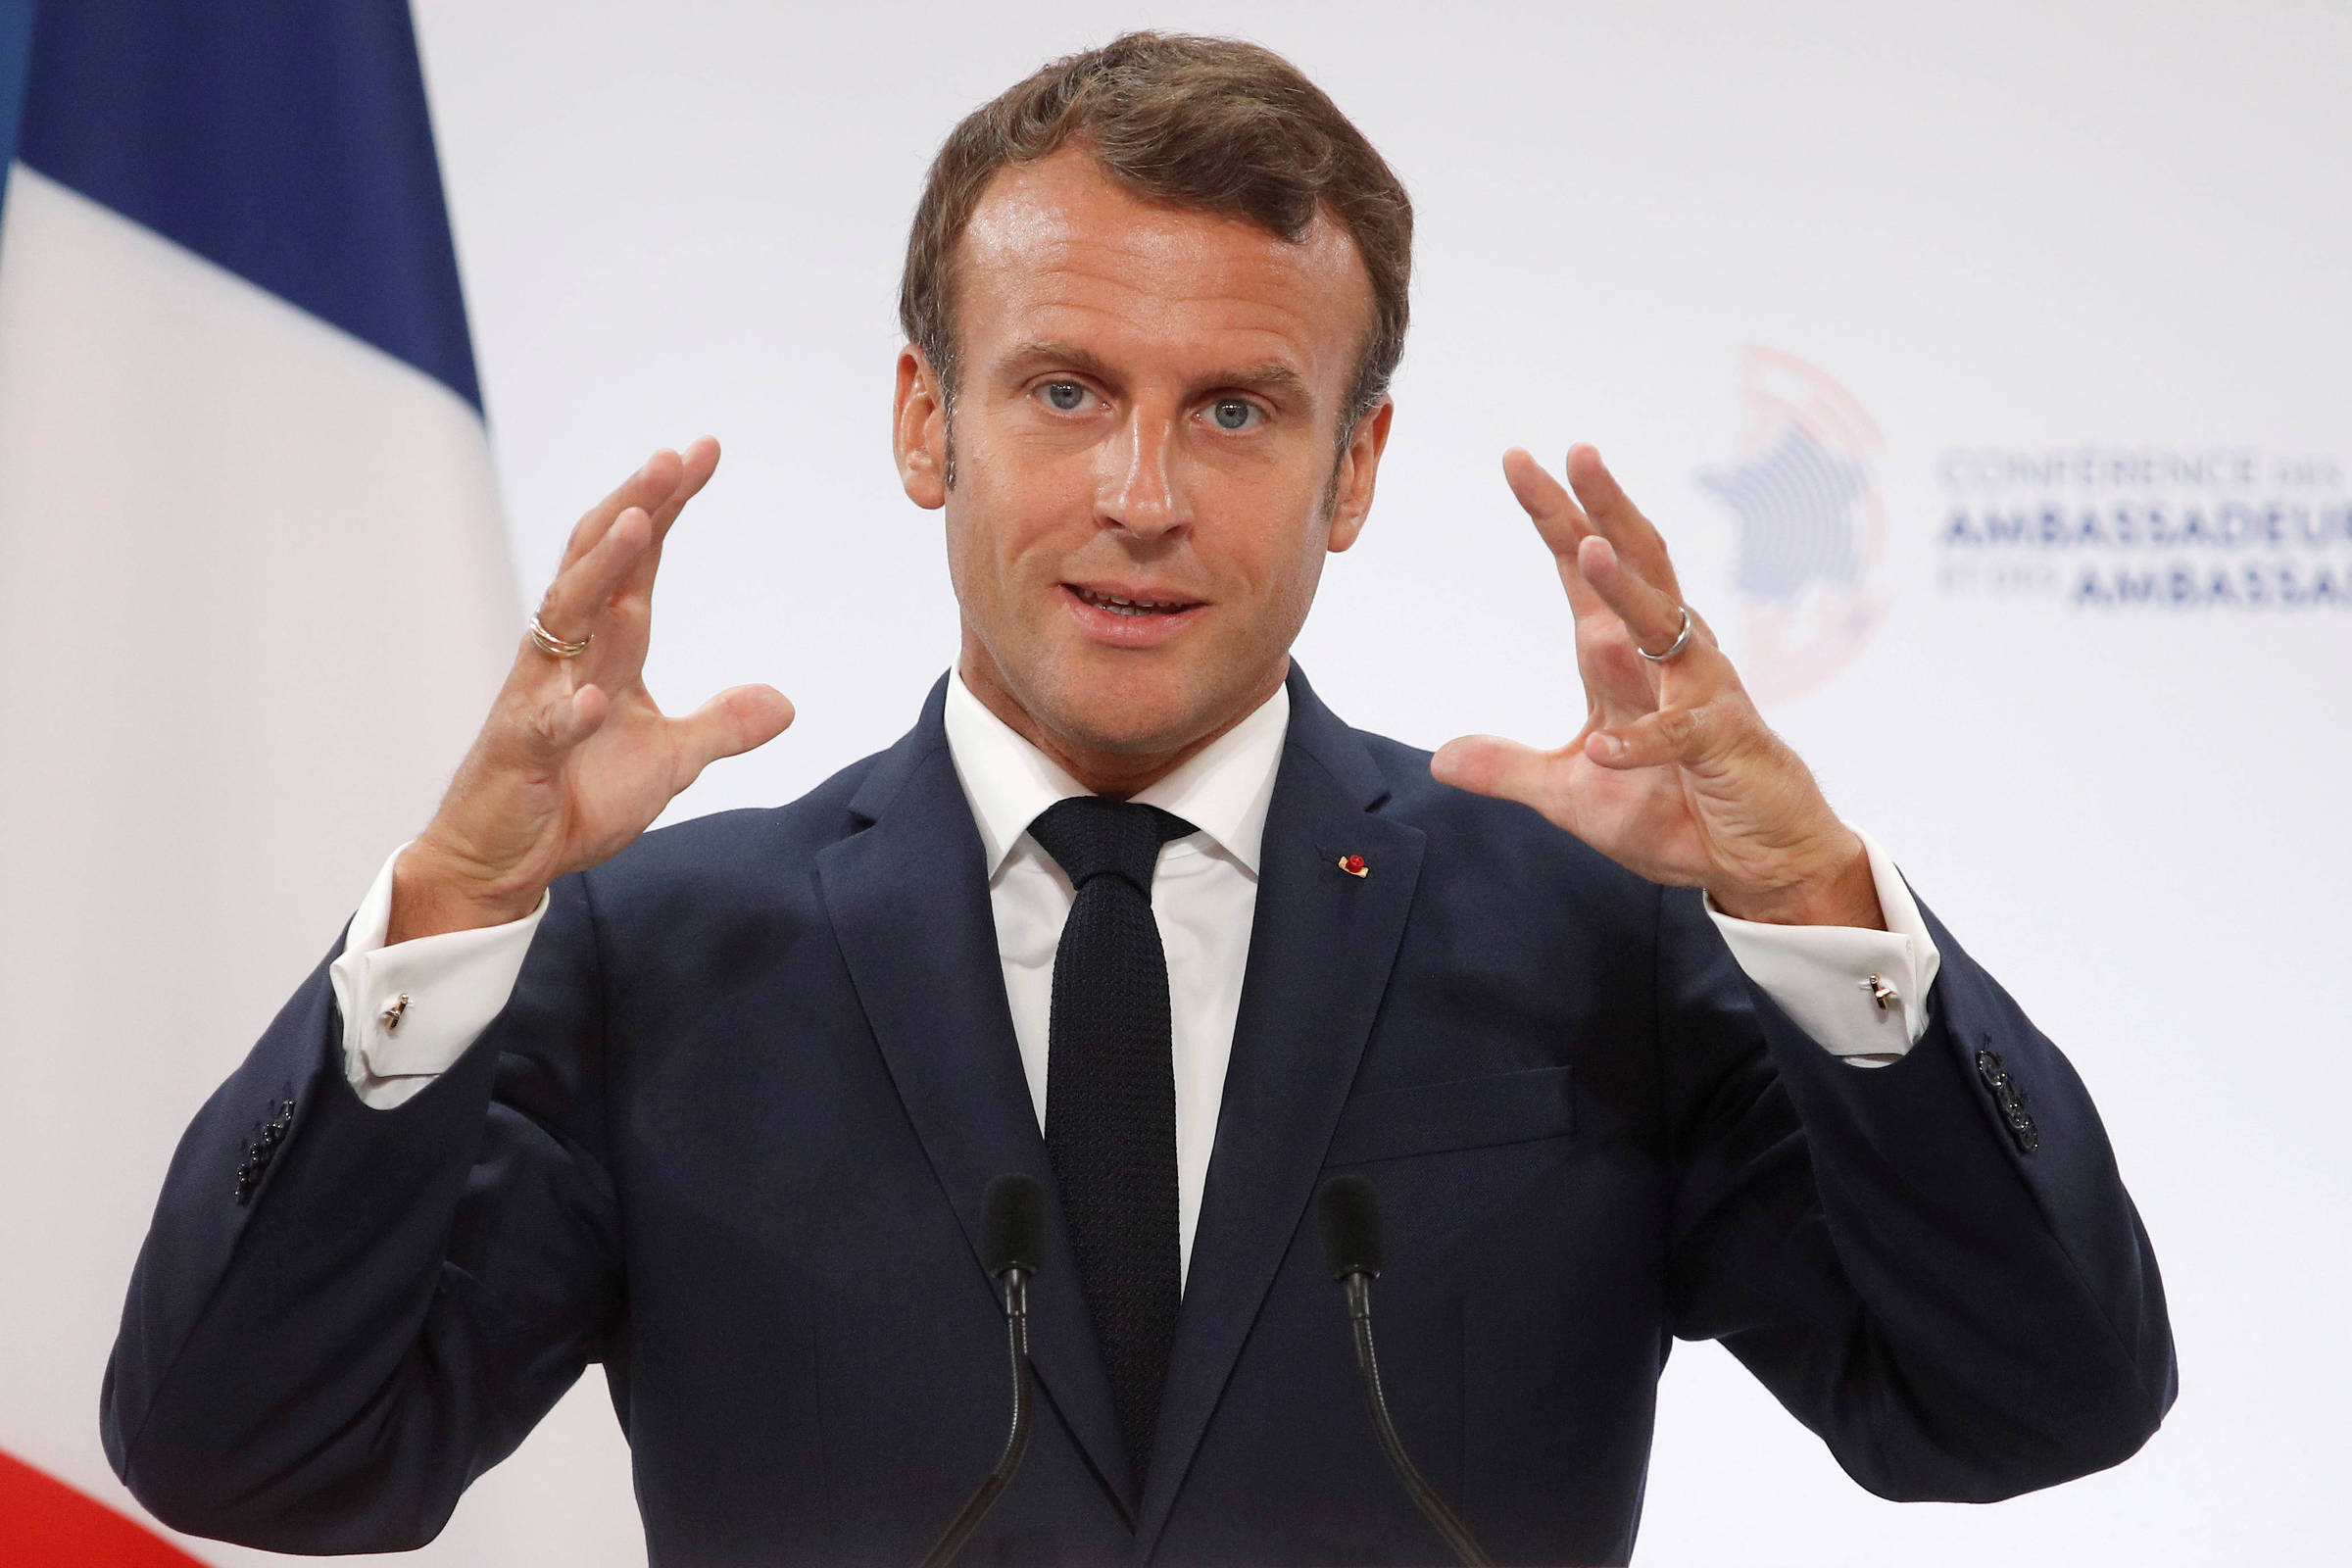 Macron est hypocrite et ne respecte pas ses obligations environnementales, selon le politologue – 29/08/2019 – Monde